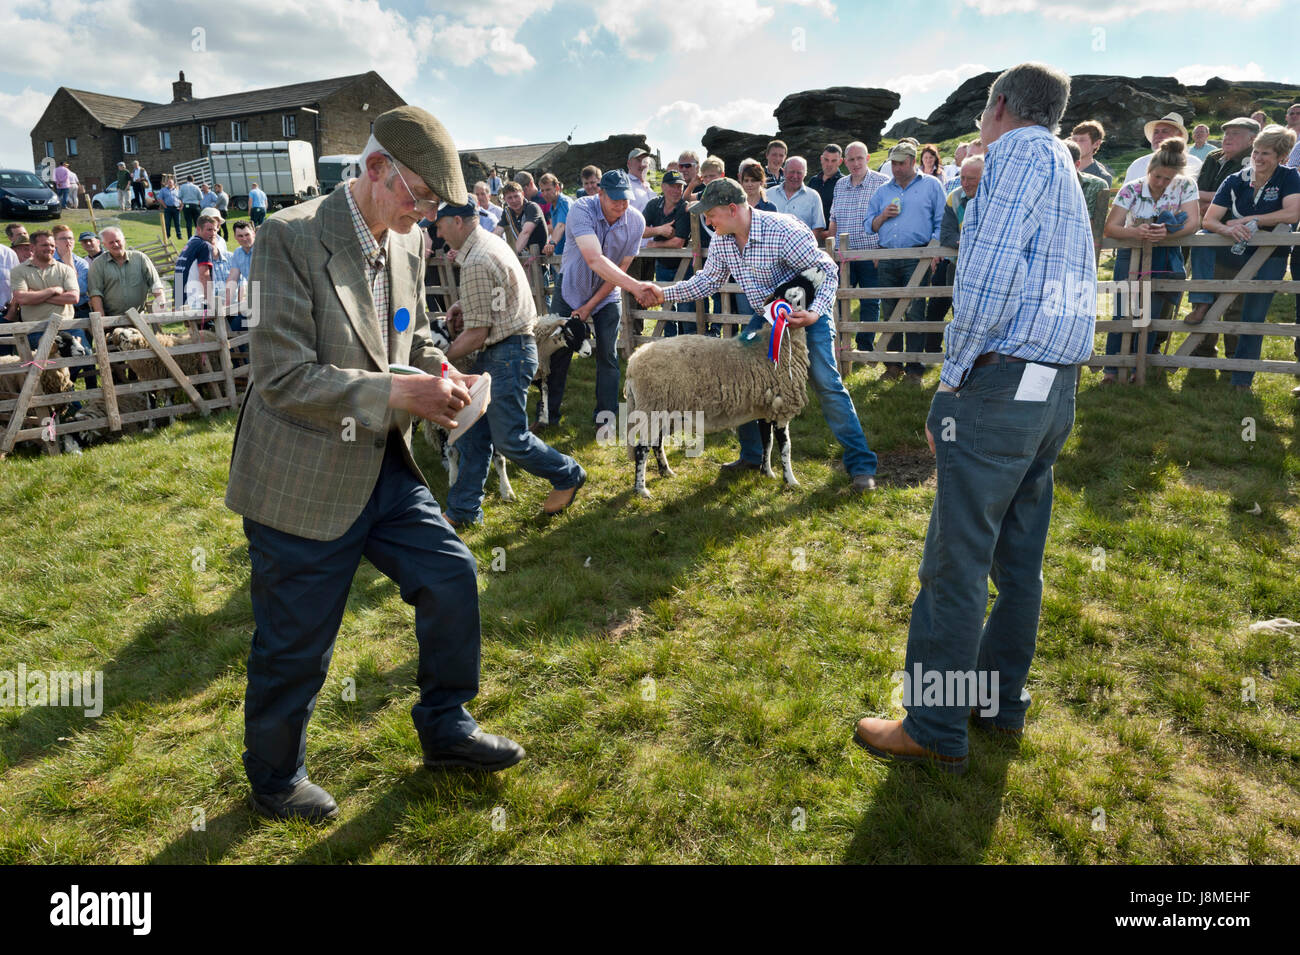 La 64e Tan Hill Mouton Swaledale ouverte tenue à La Tan Hill Inn, North Yorkshire, mai 2017. Un gagnant est félicité dans l'anneau de jugement. Banque D'Images